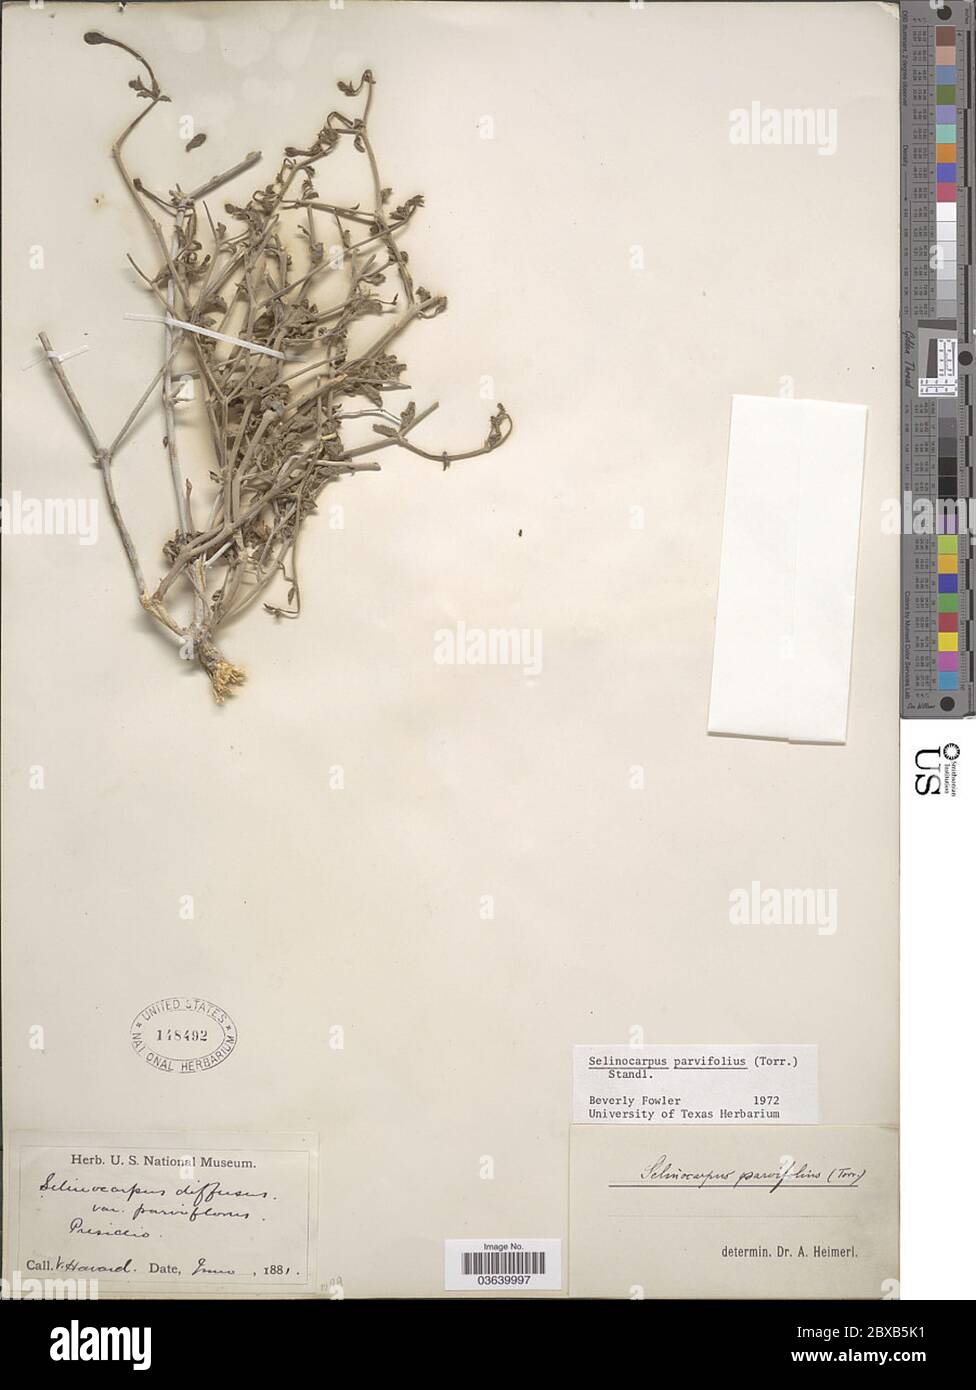 Selinocarpus parvifolius Torr Standl Selinocarpus parvifolius Torr Standl. Stock Photo